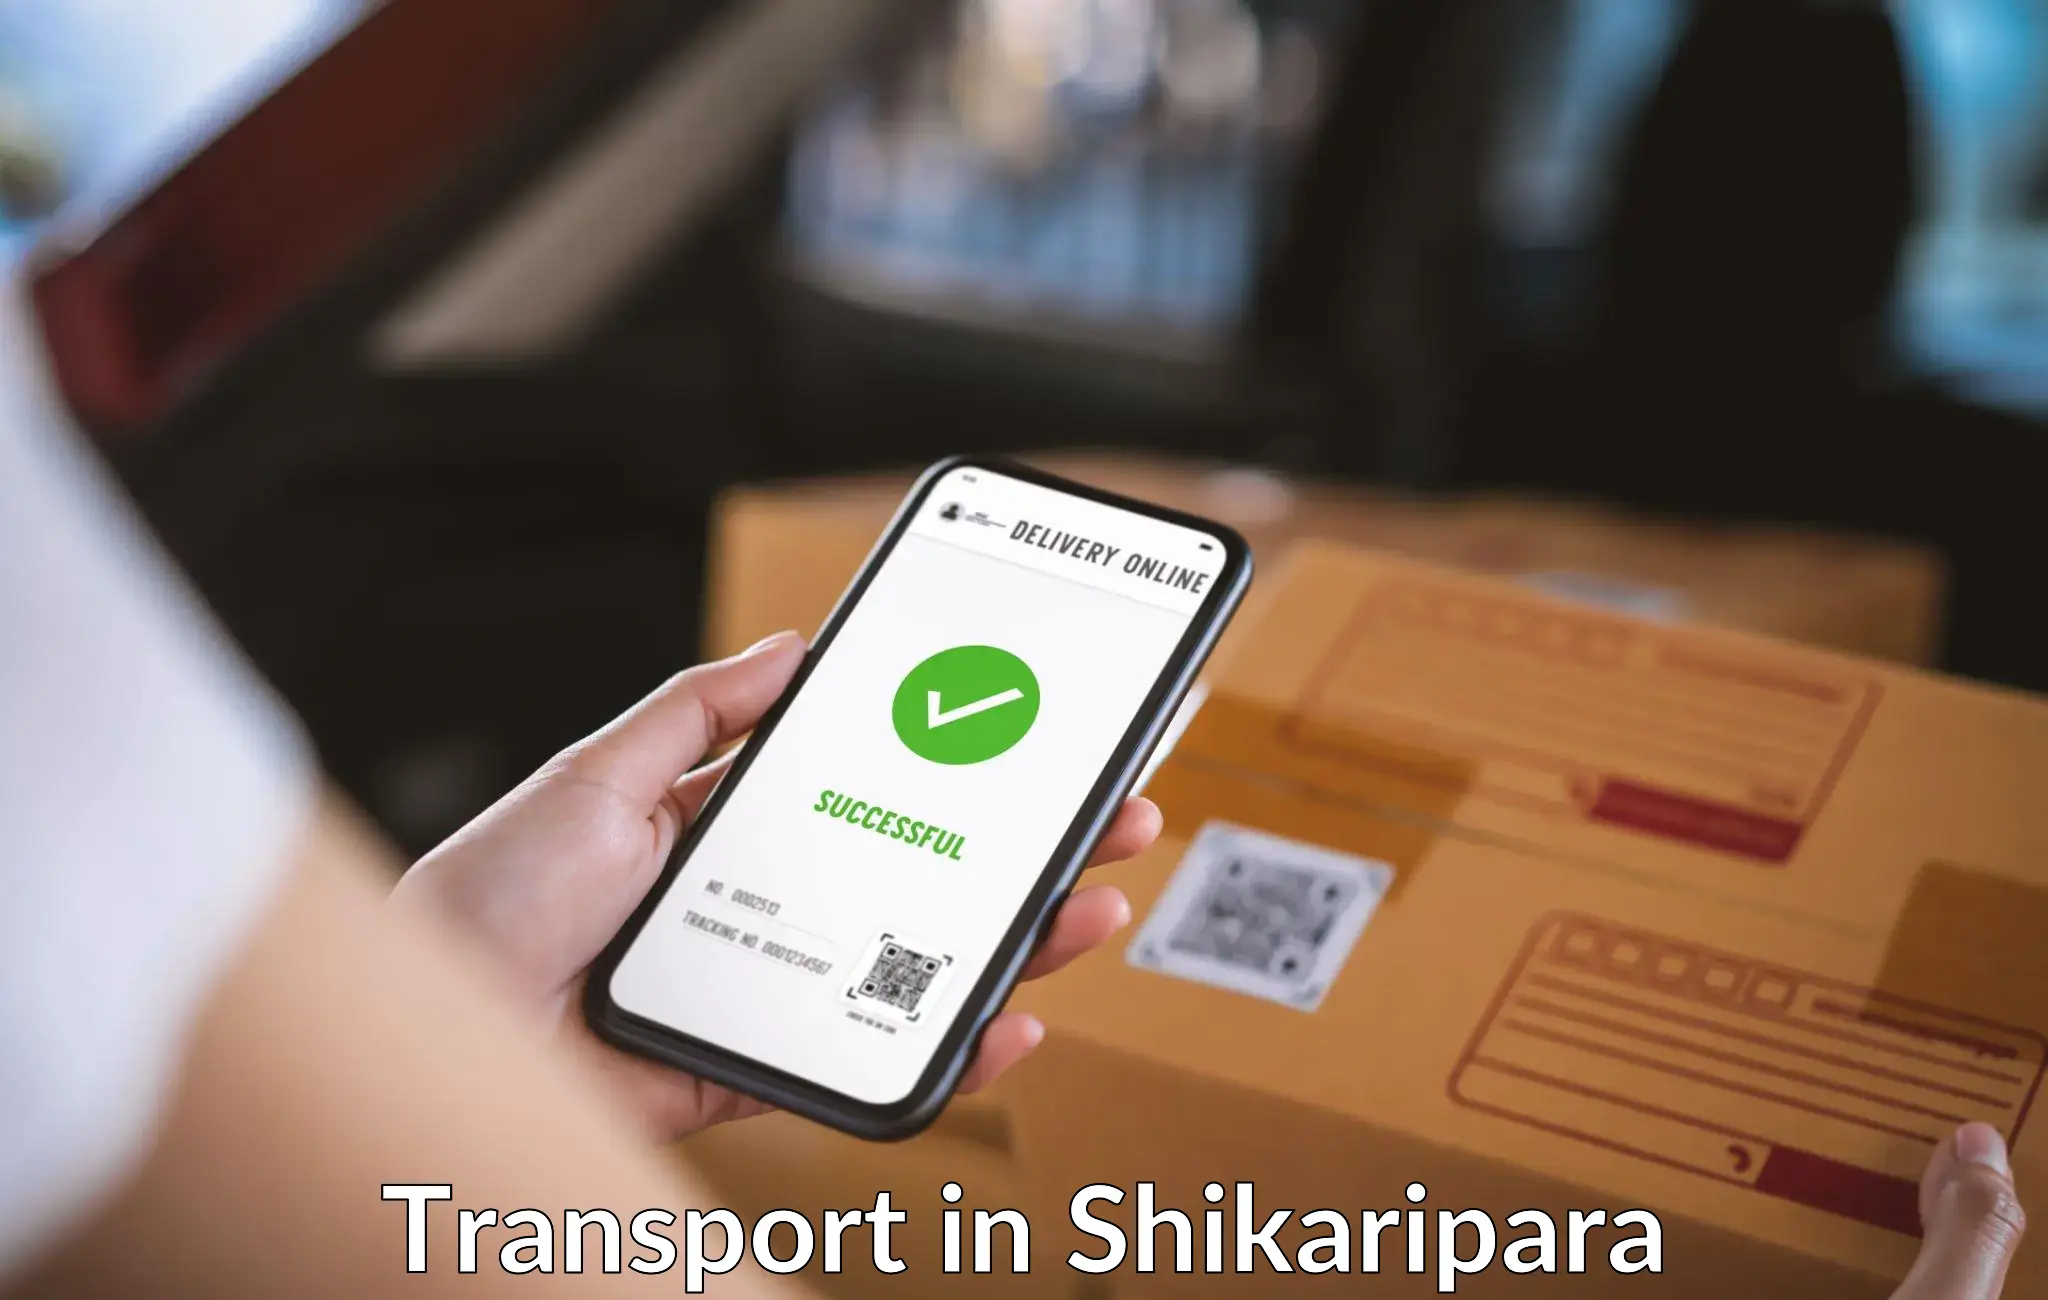 Interstate transport services in Shikaripara